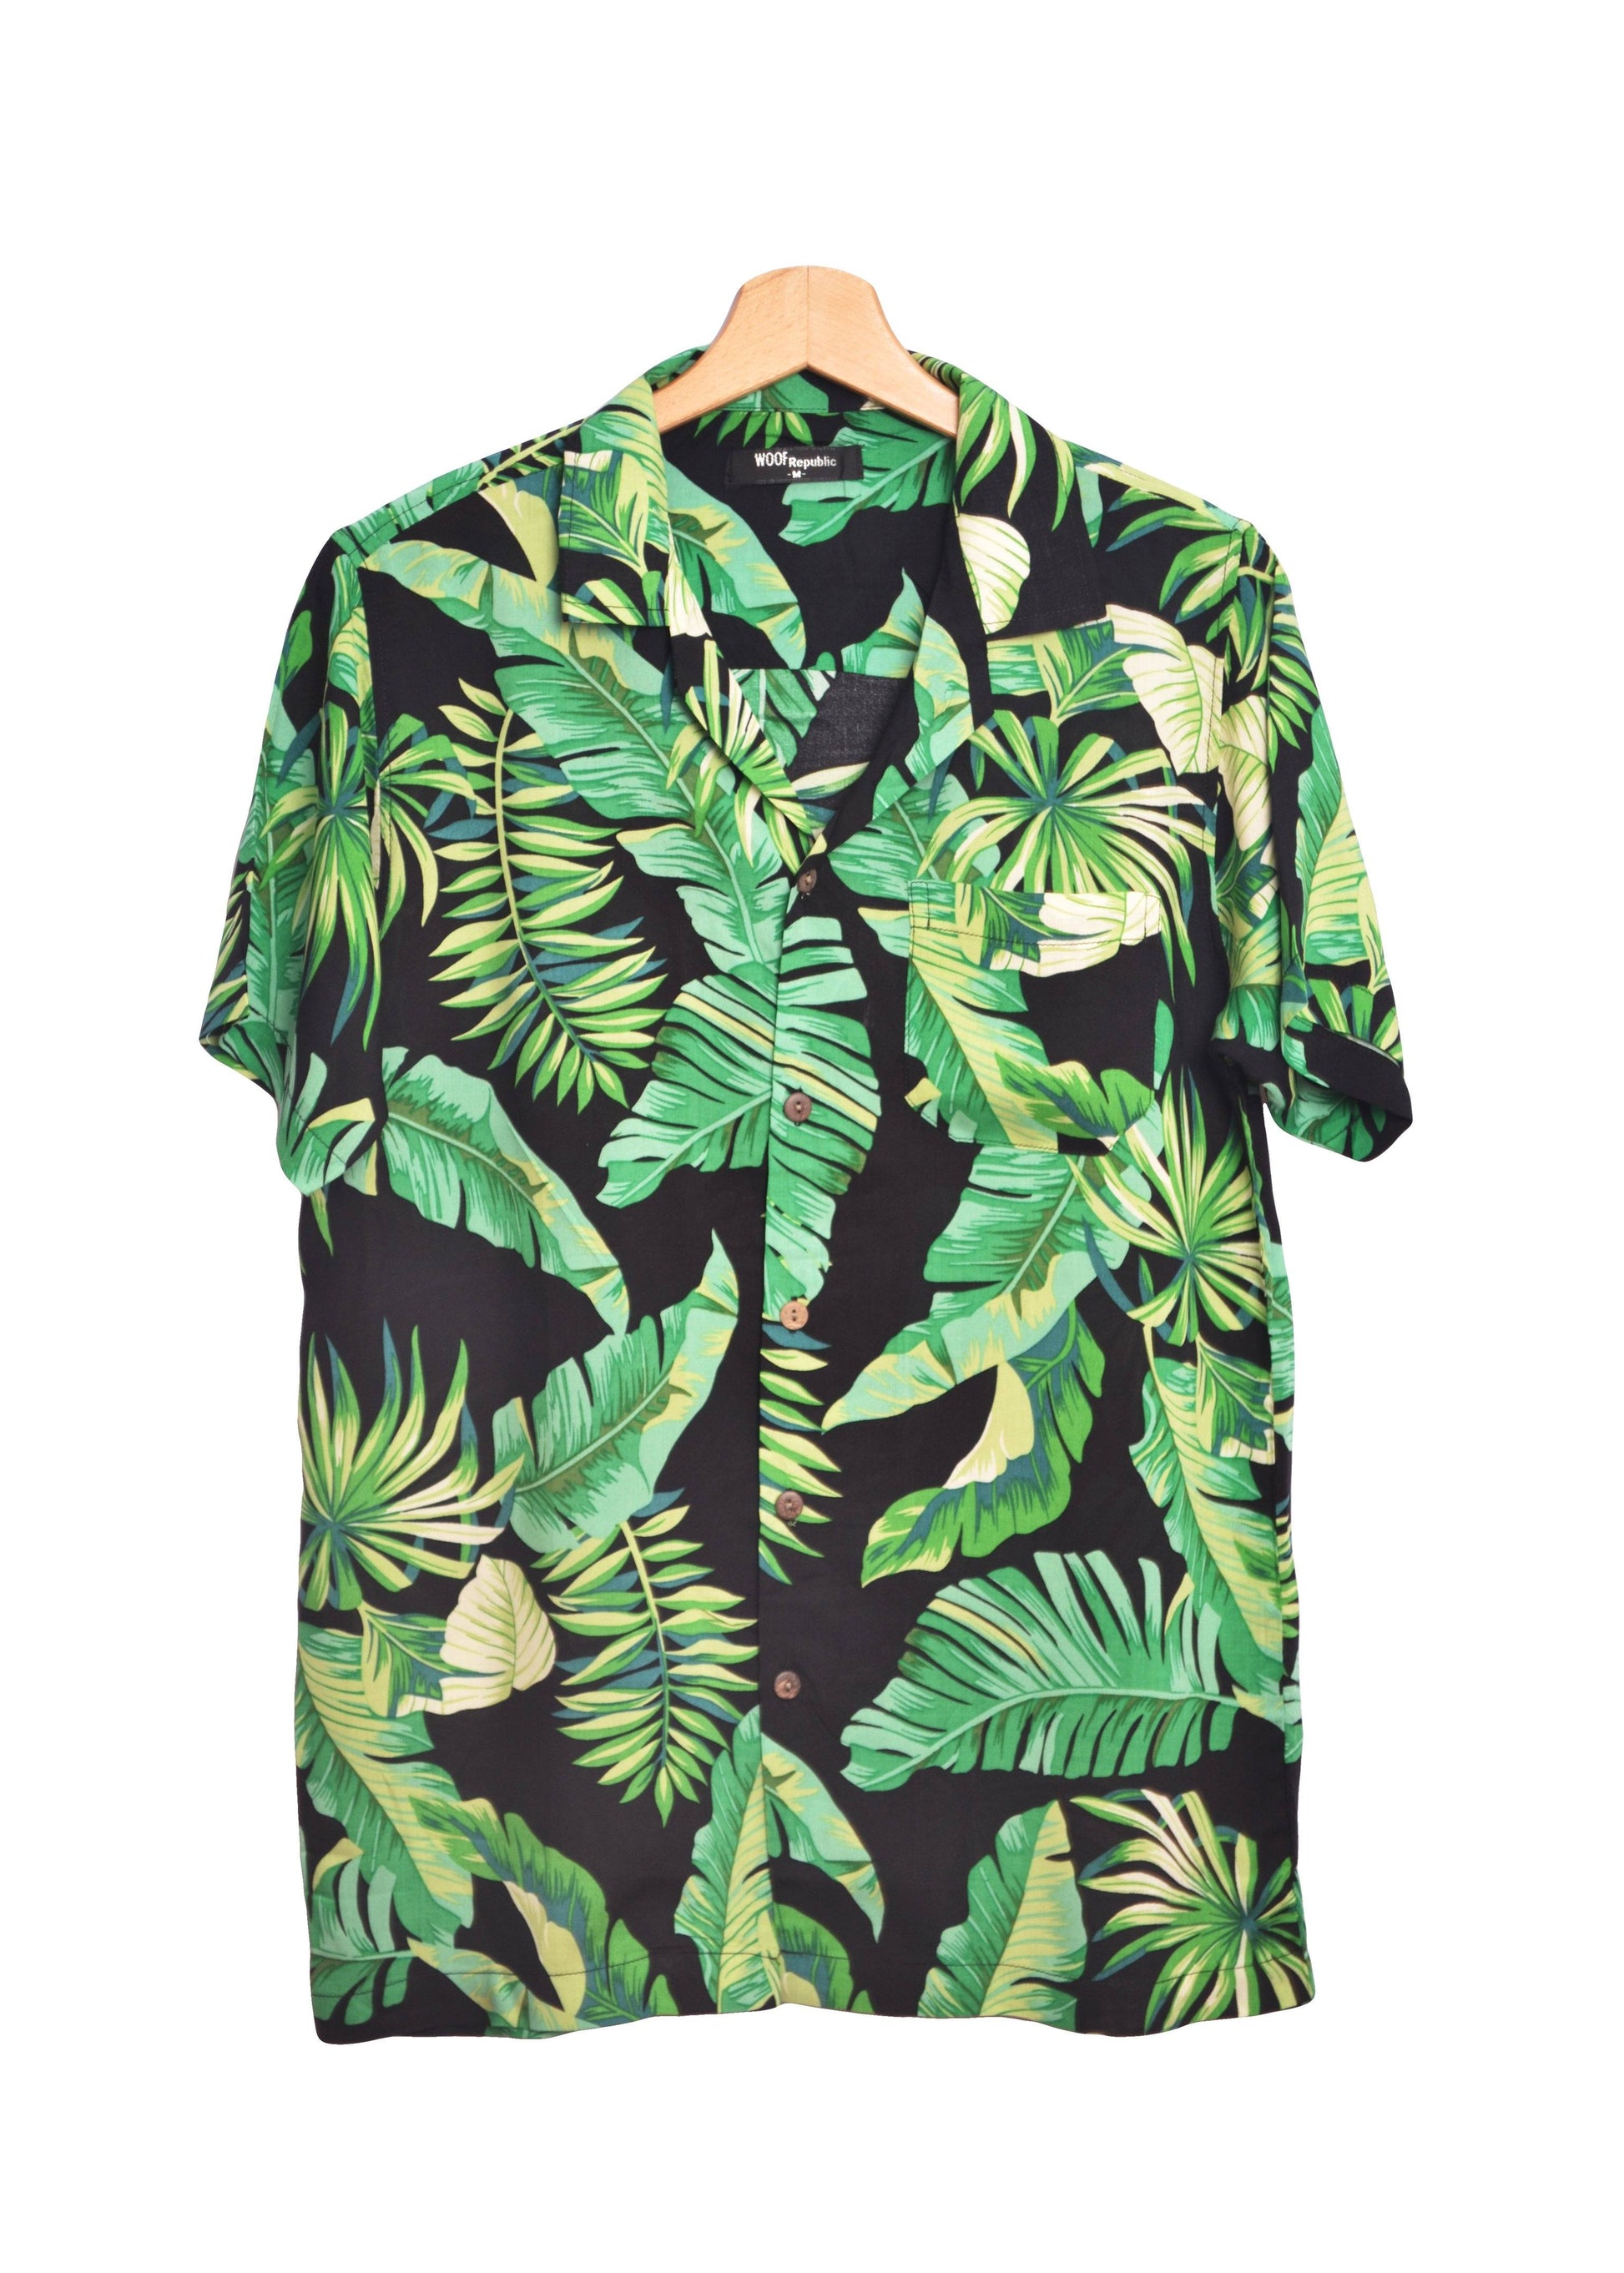 Chemise hawaienne noire pour homme avec imprimé floral vert